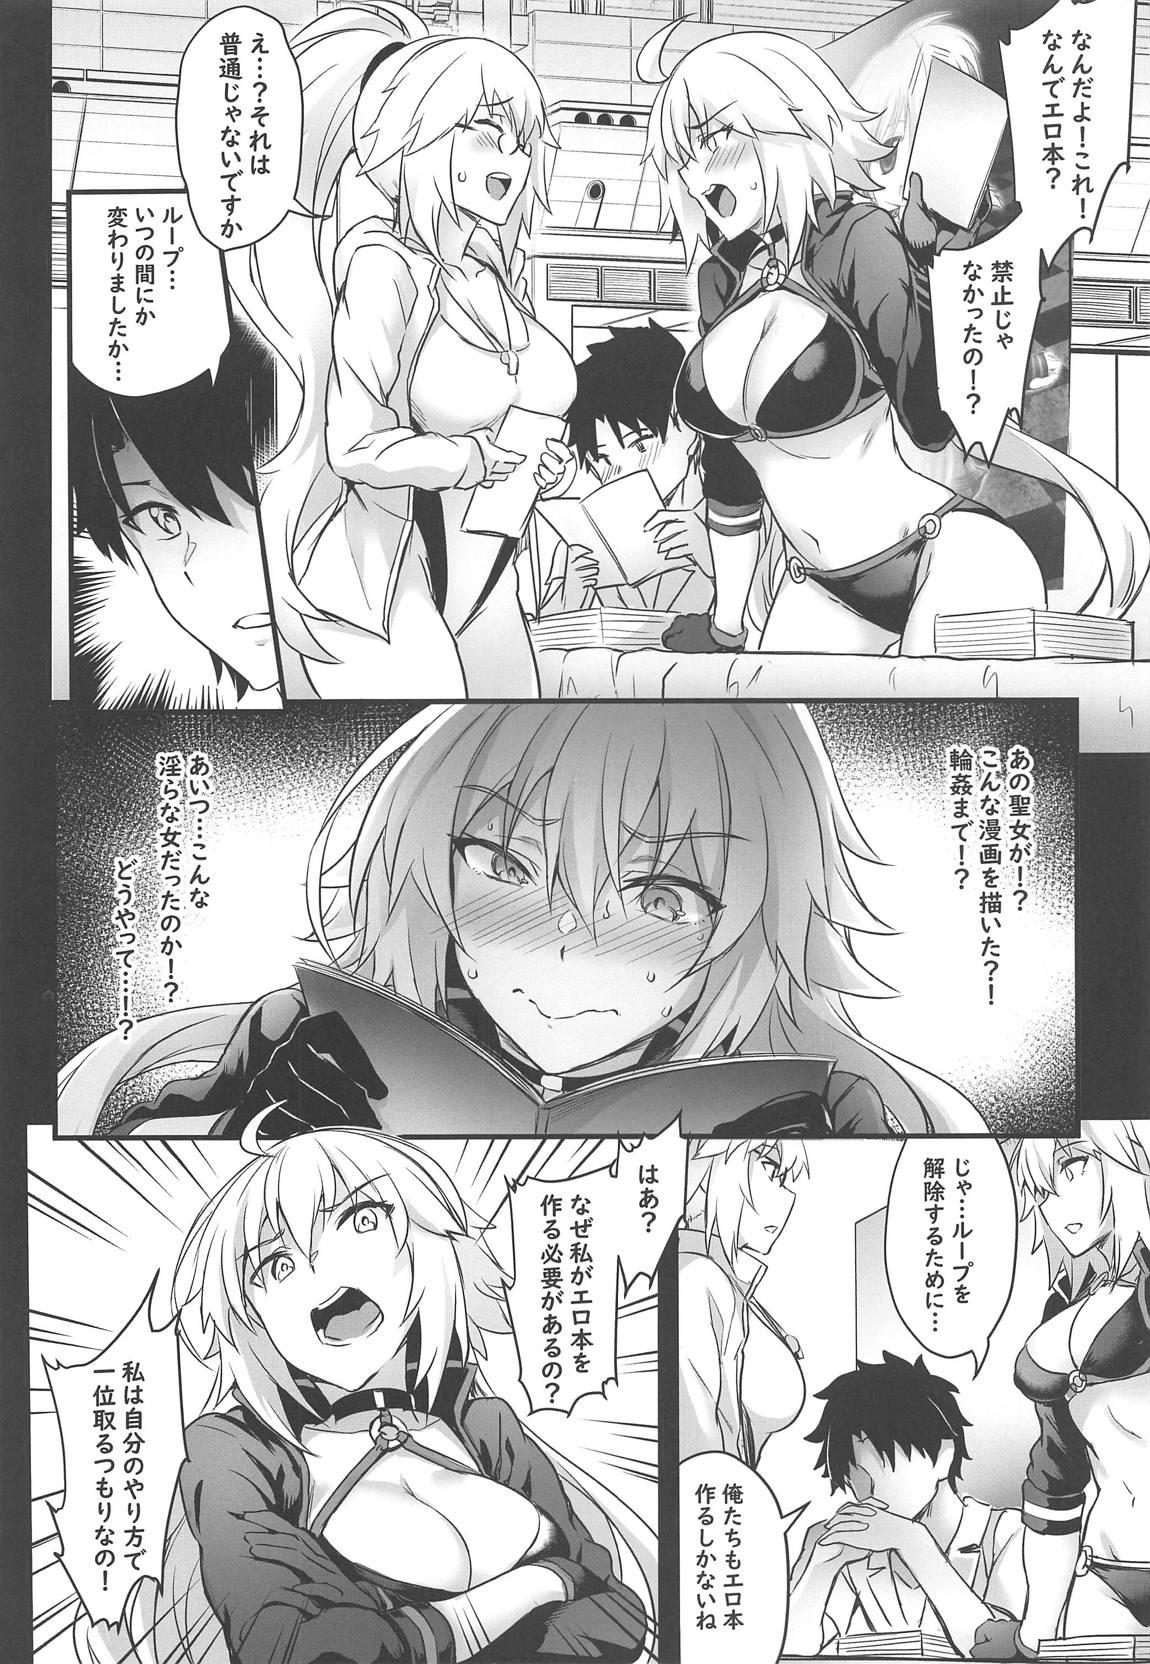 Hooker Serva Fes no Jeanne no Sodatekata - Fate grand order Flogging - Page 5